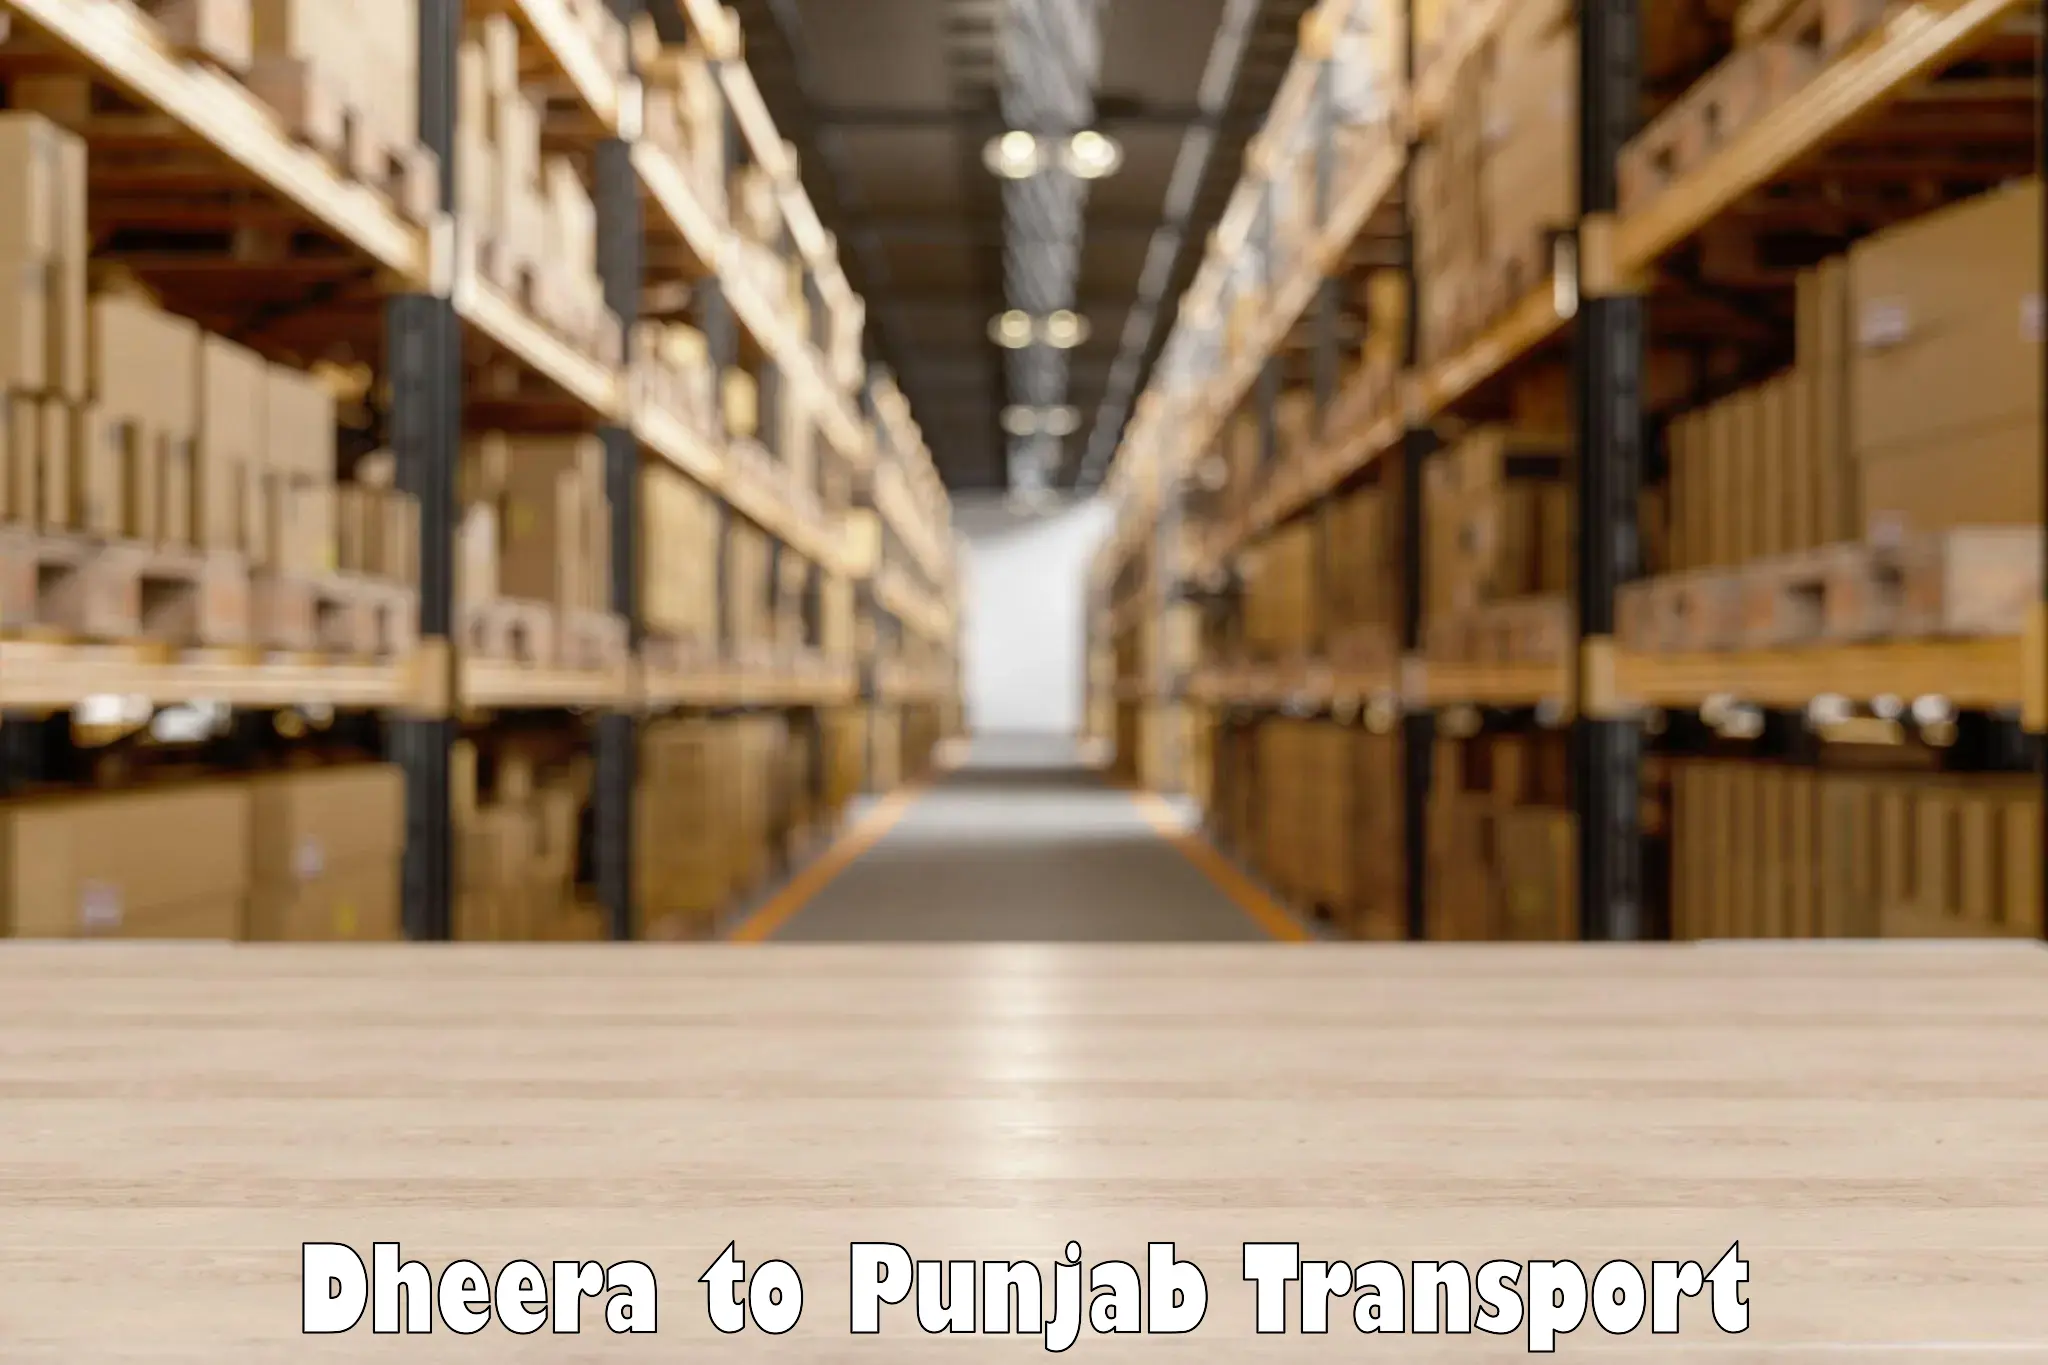 Furniture transport service Dheera to Raikot